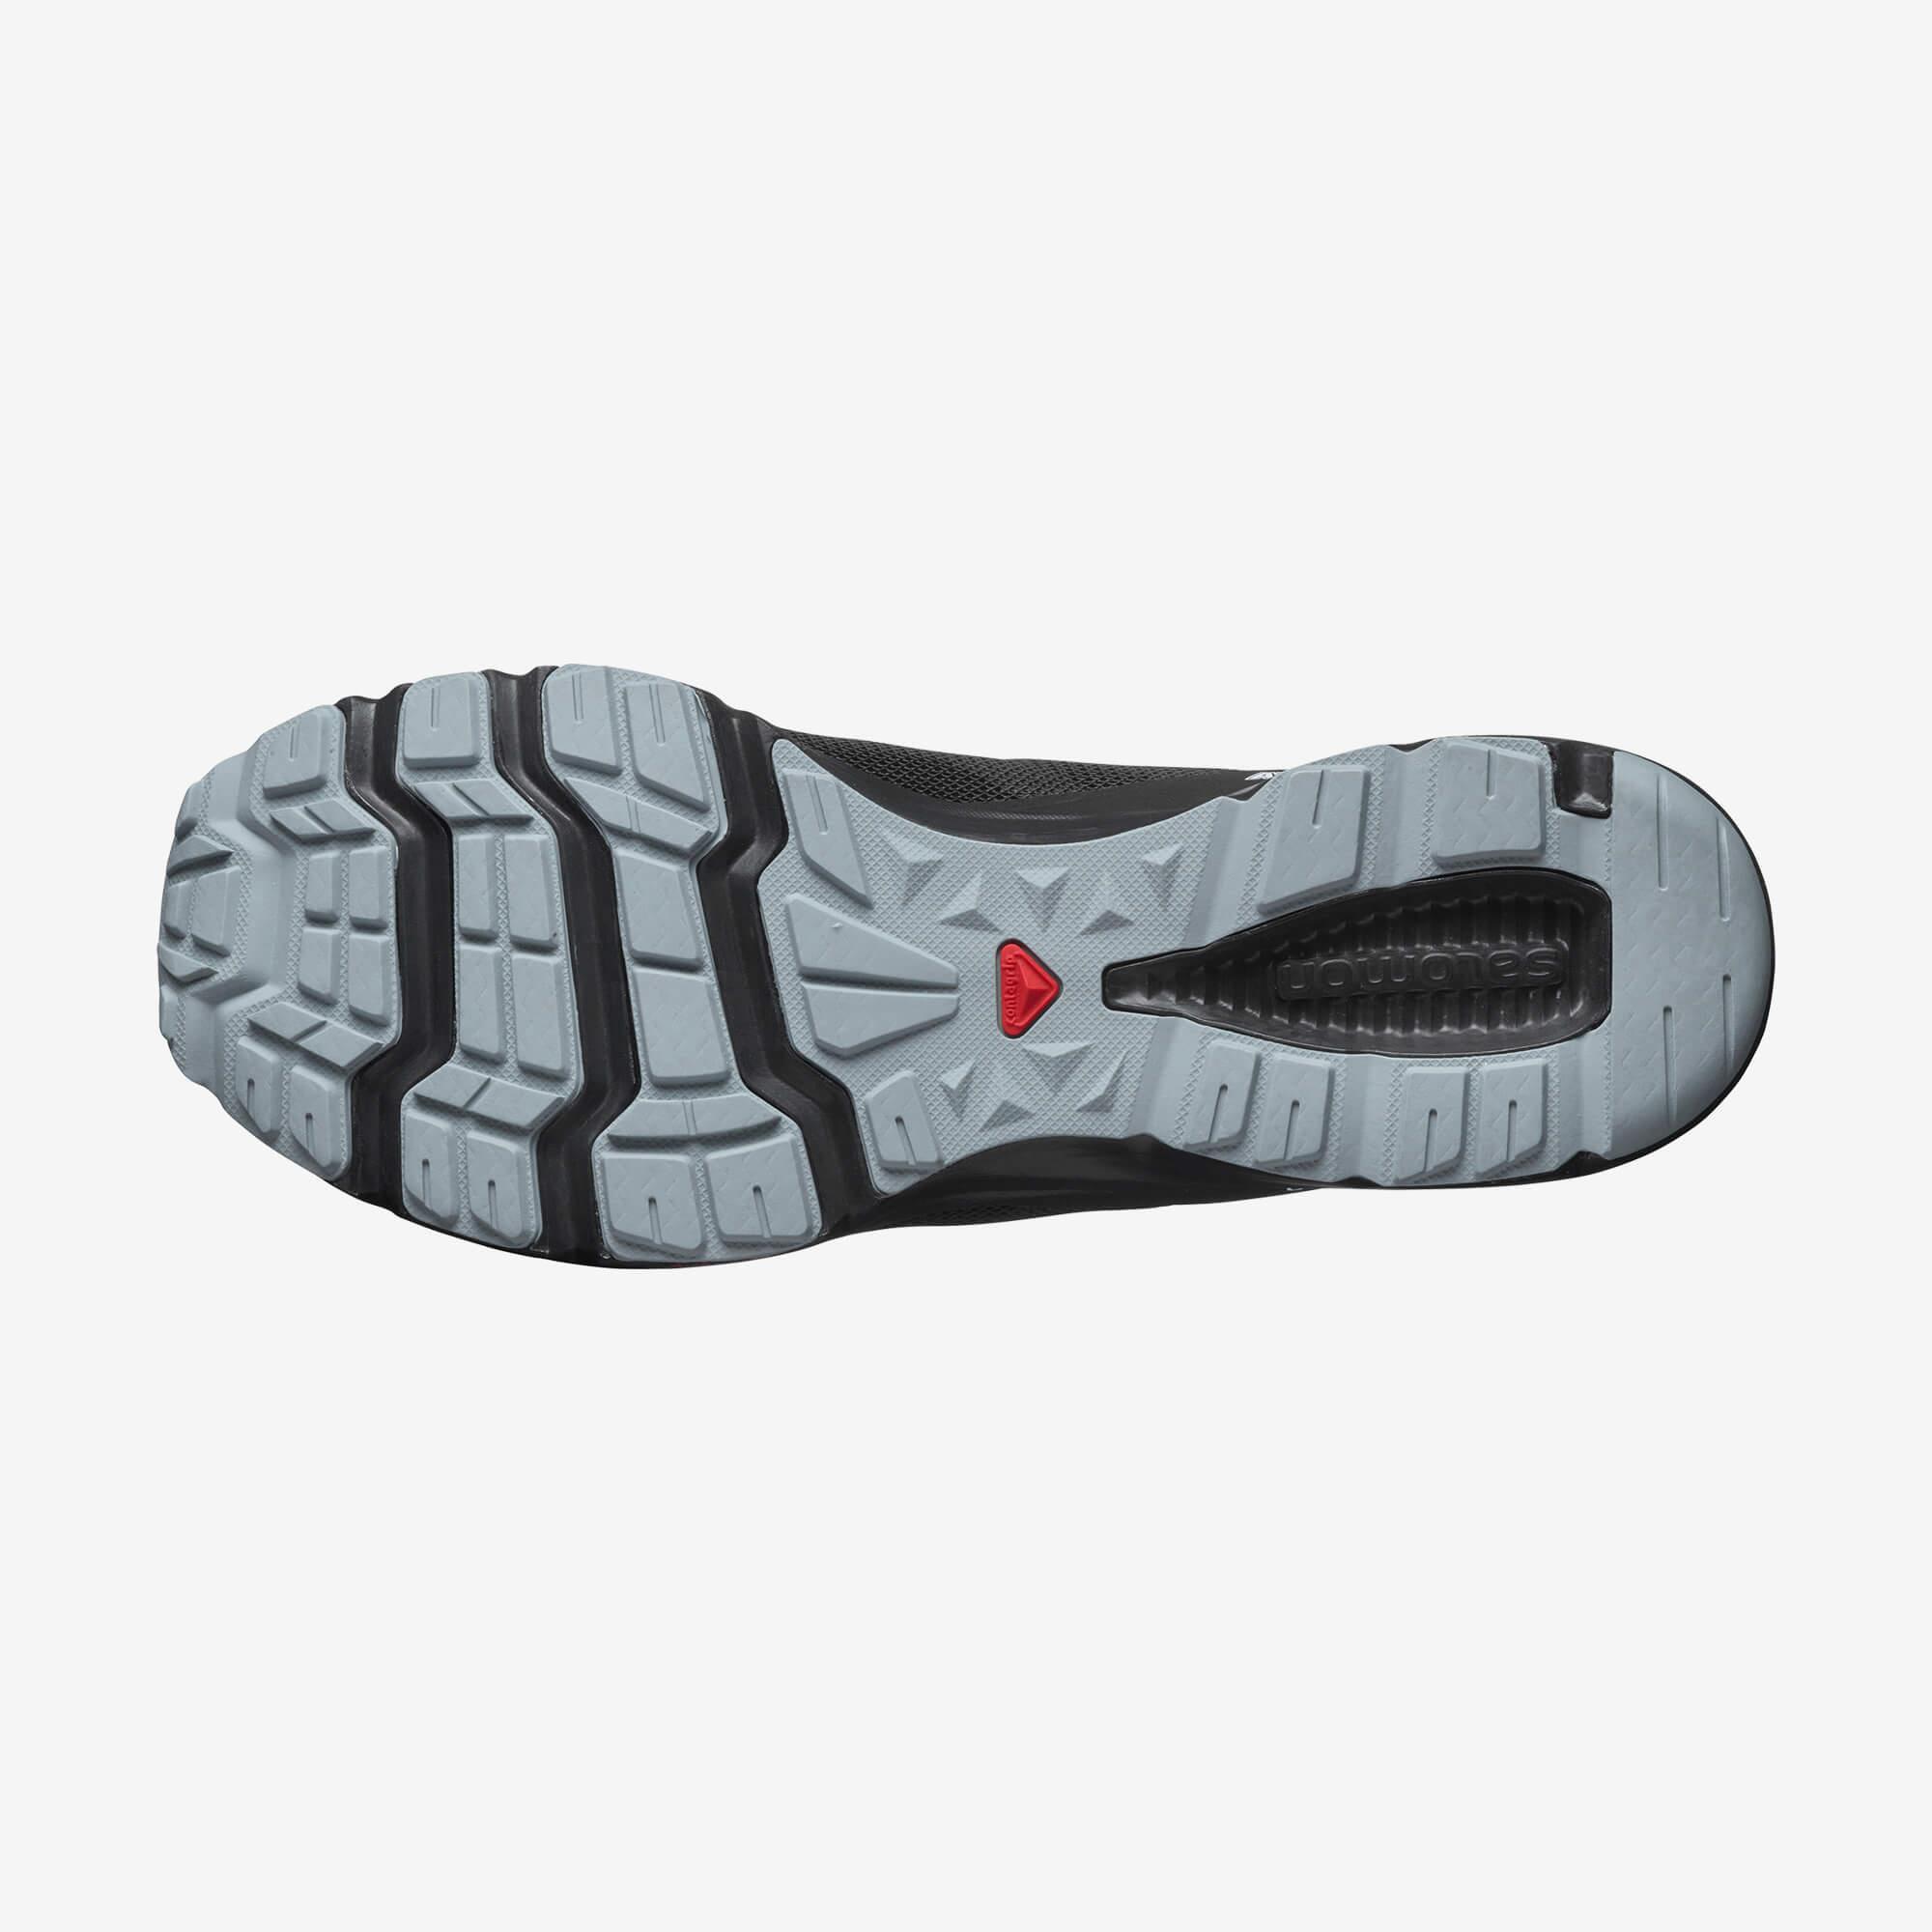 Amphib Bold 2 - Erkek Su Ayakkabısı | Salomon